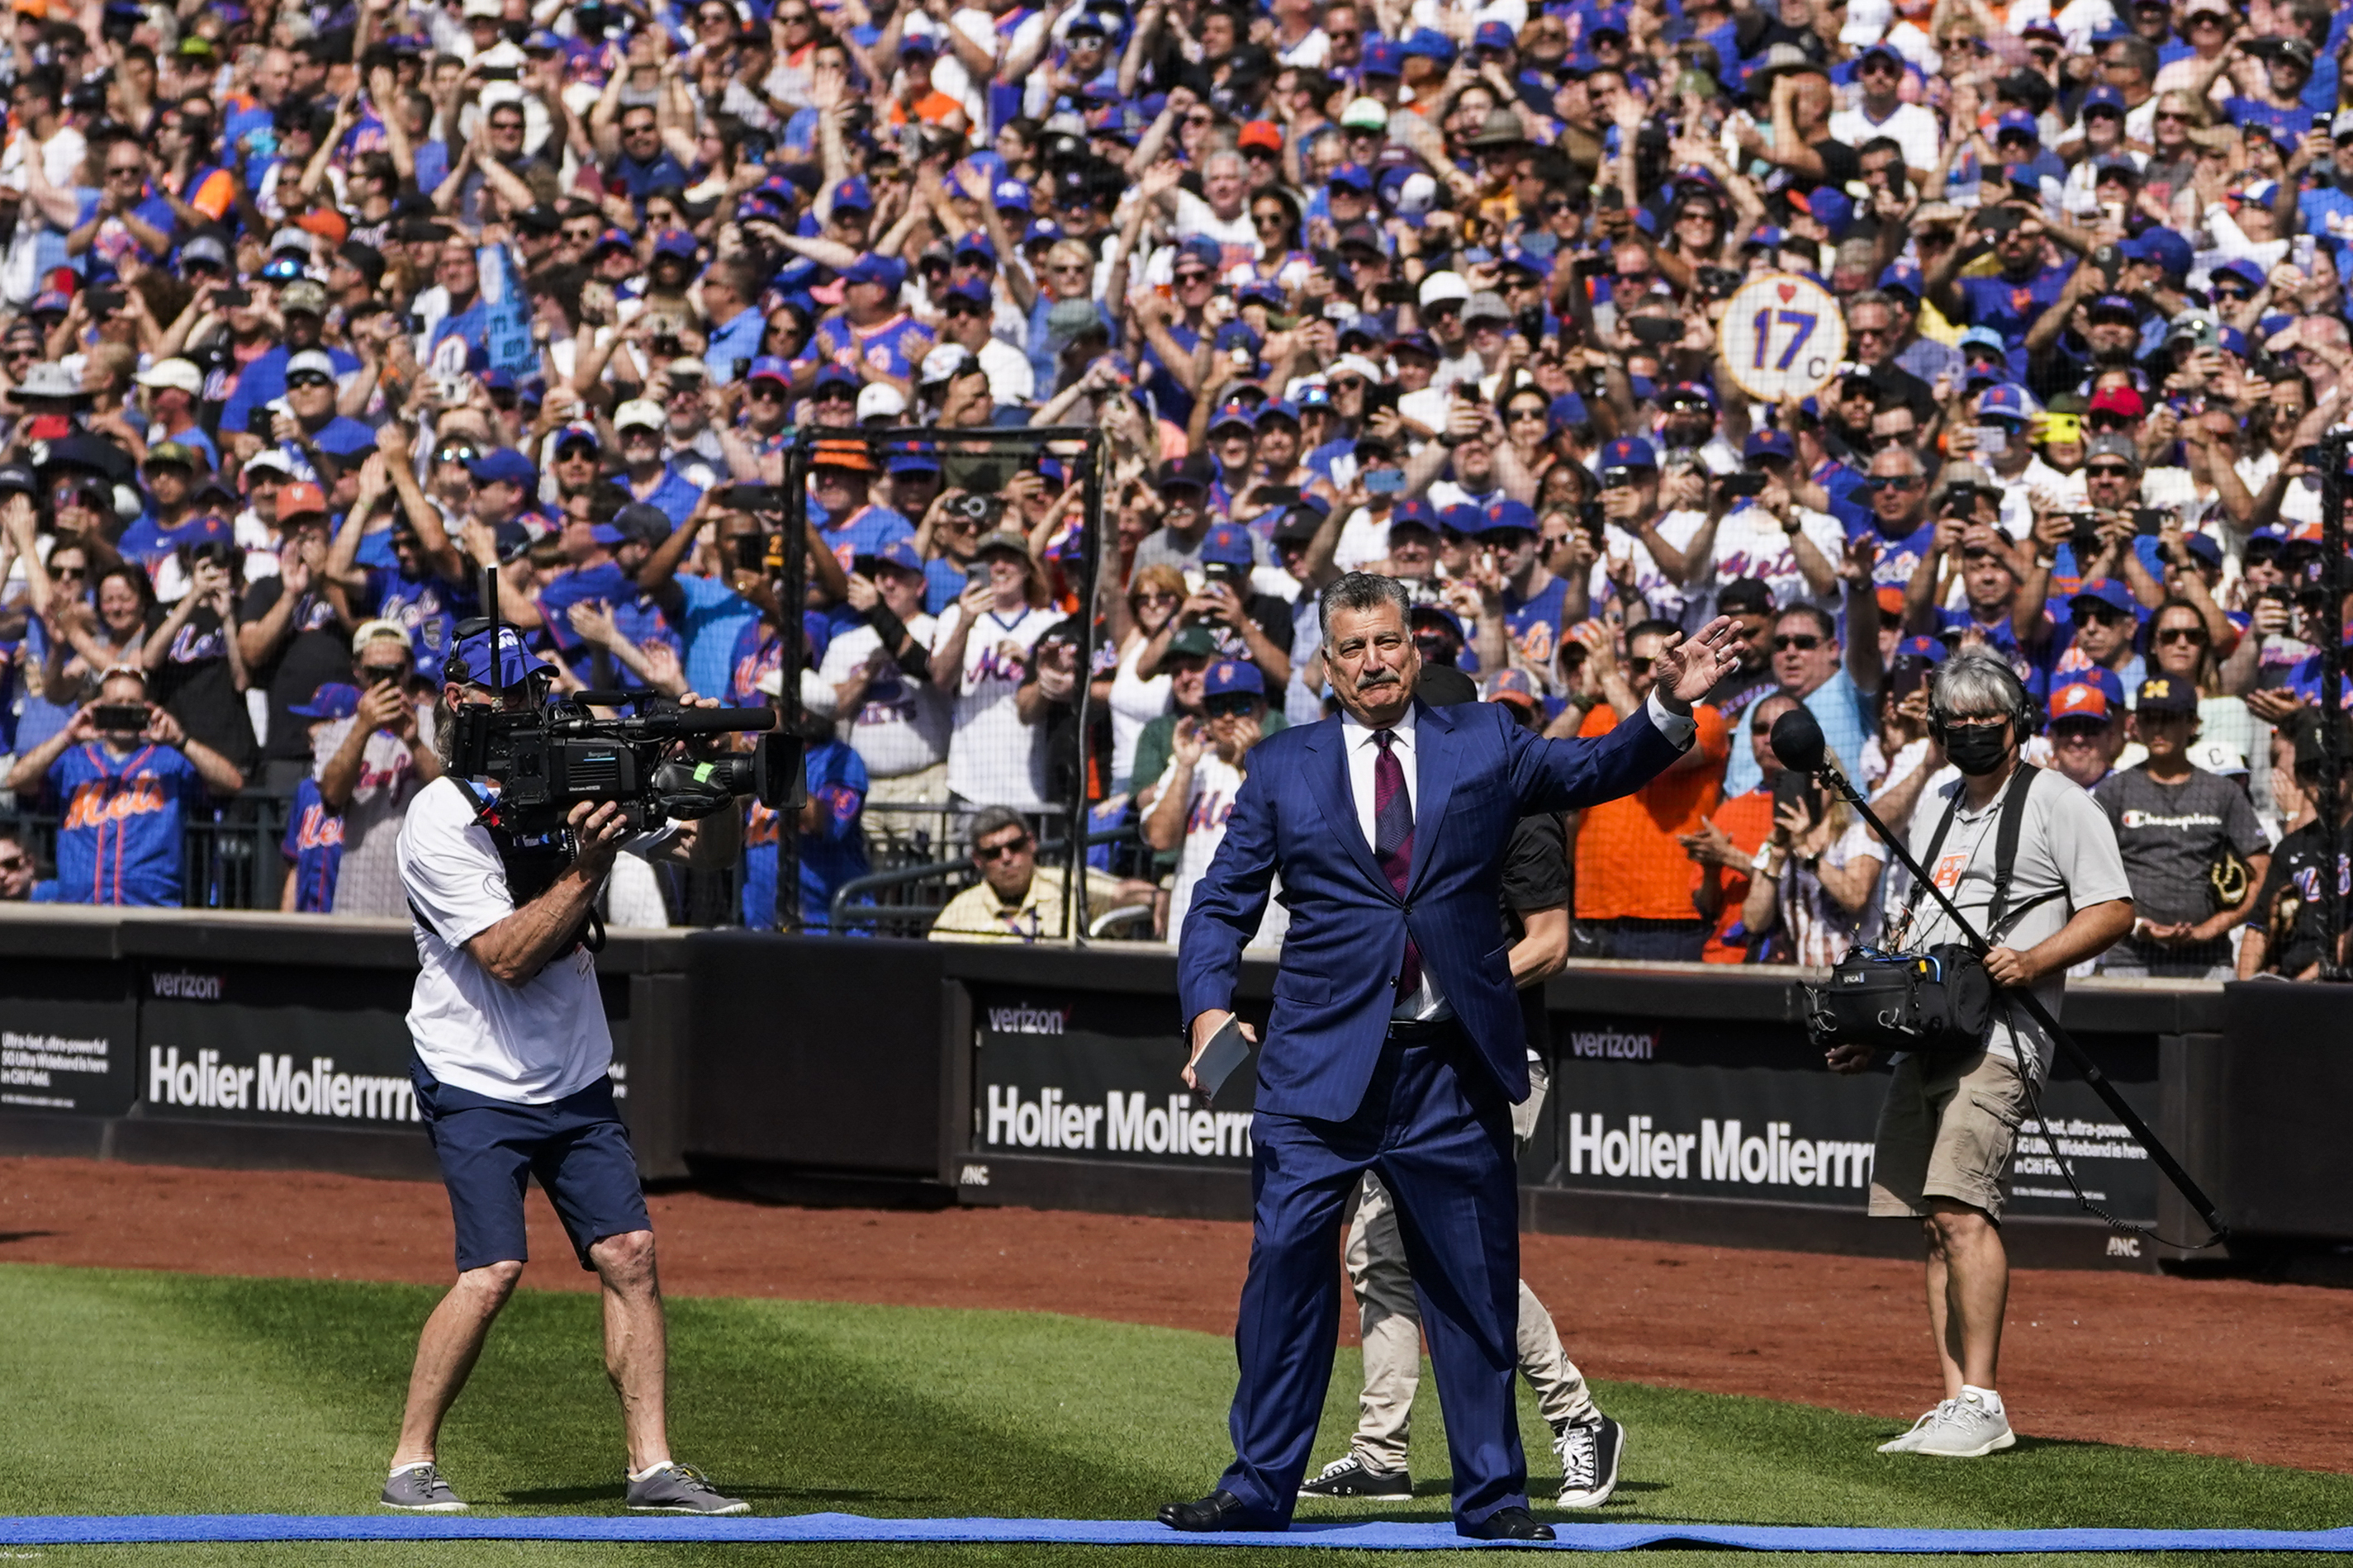 Mets News: Mets will retire Keith Hernandez's number 17 - Amazin' Avenue